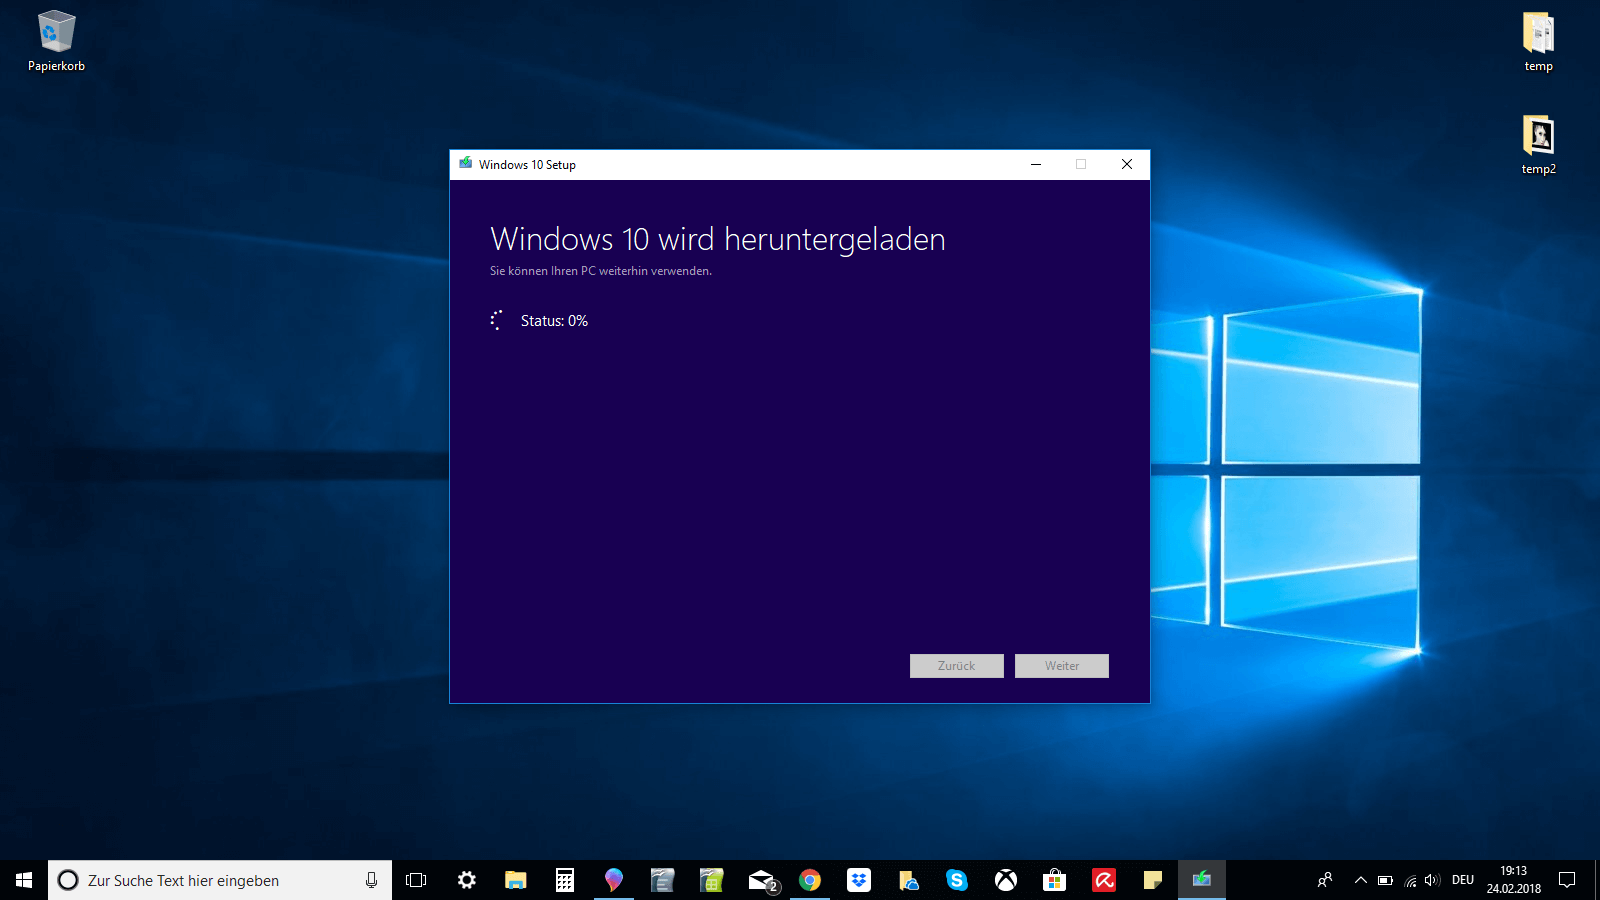 Windows-10-Setup-Fenster mit der Nachricht „Windows 10 wird heruntergeladen“